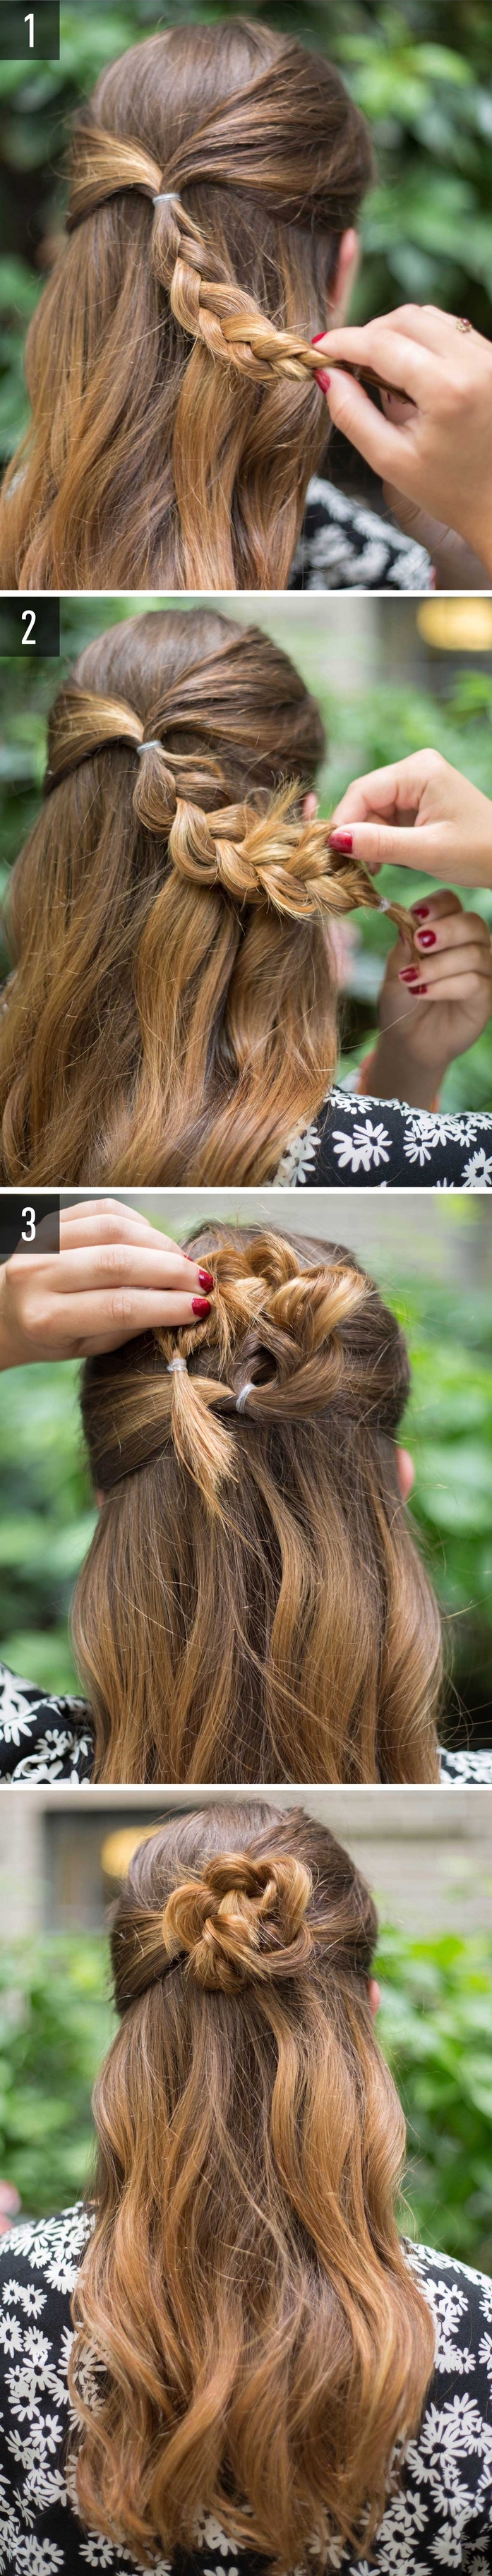 chignon facile en forme de fleur pour une coiffure cheveux longs originale et romantique réalisé en peu de temps